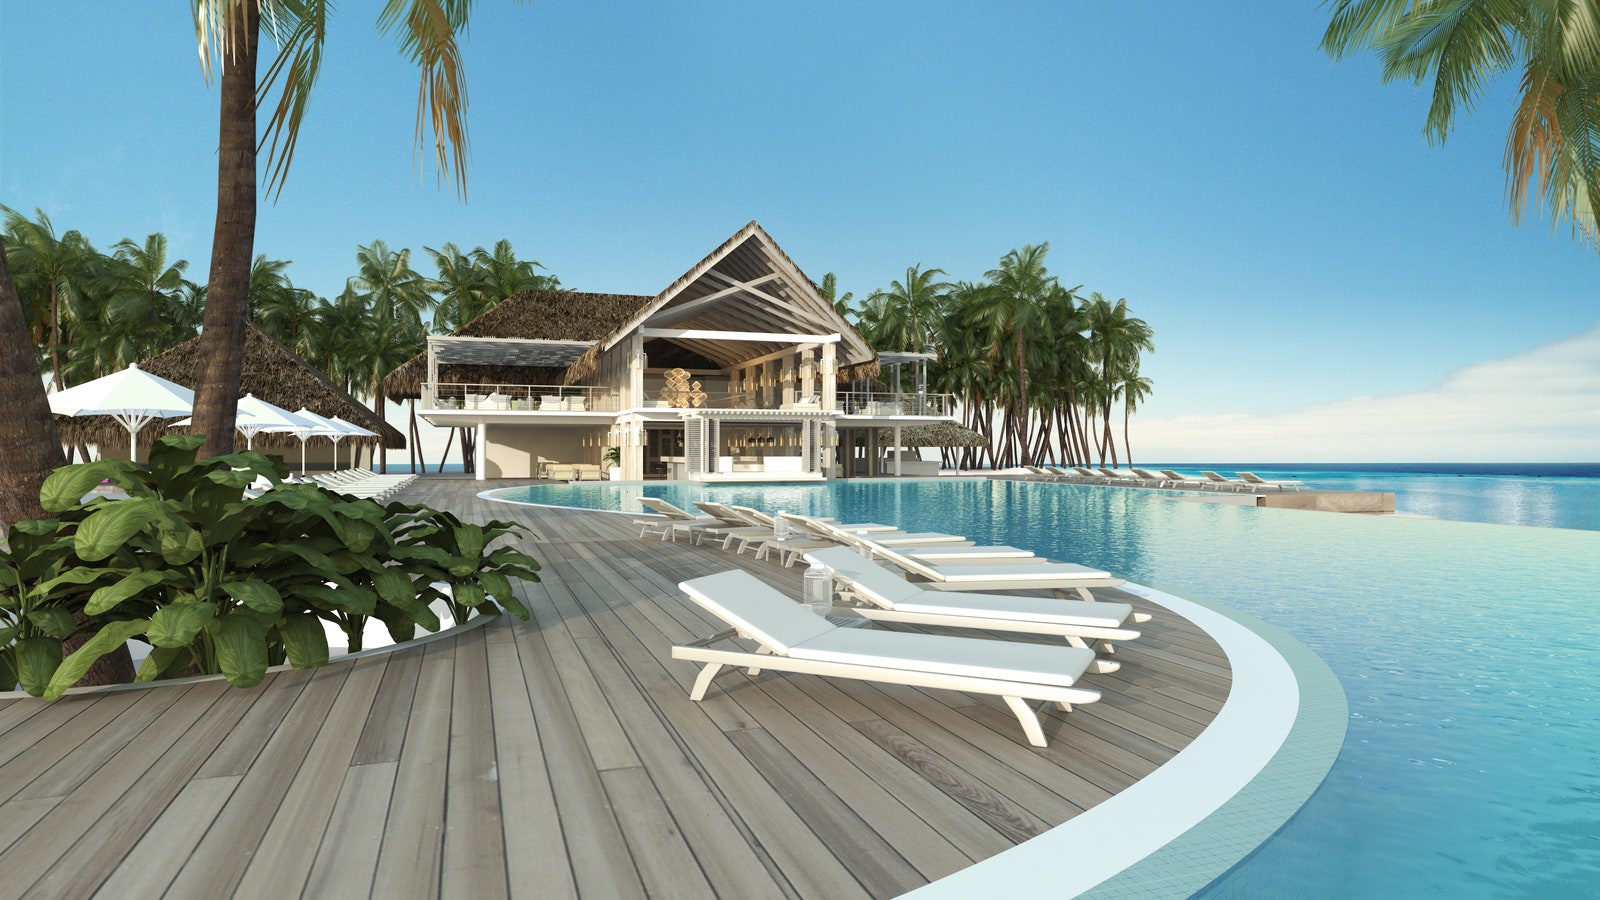 Курорт Baglioni Resort Maldives открывается летом 2017 бронировать виллы можно в феврале | Allure